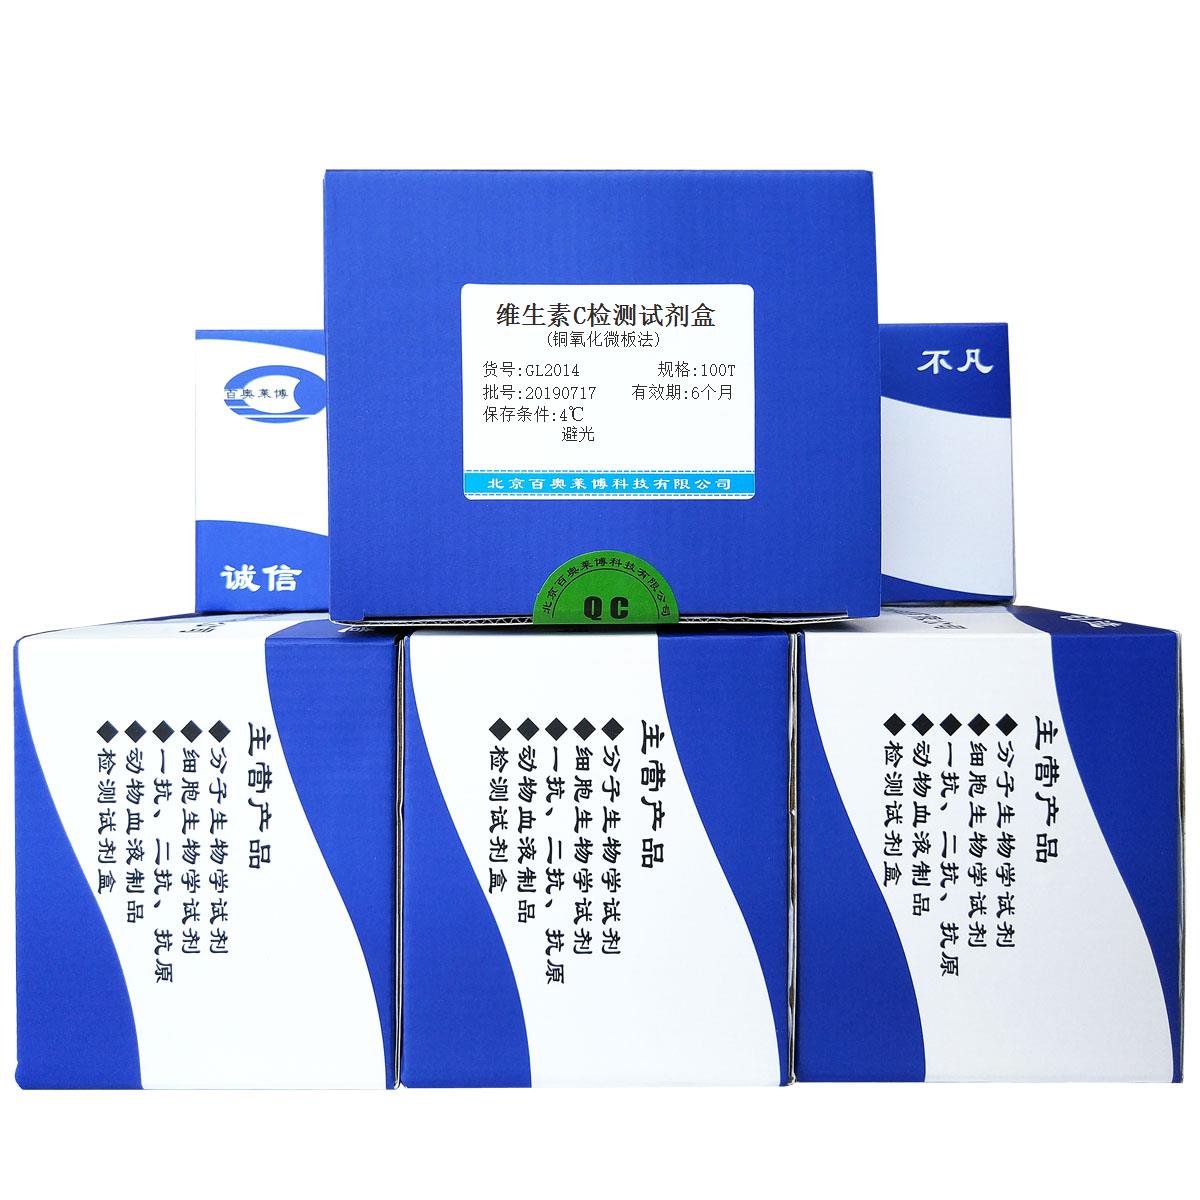 维生素C检测试剂盒(铜氧化微板法)北京供应商